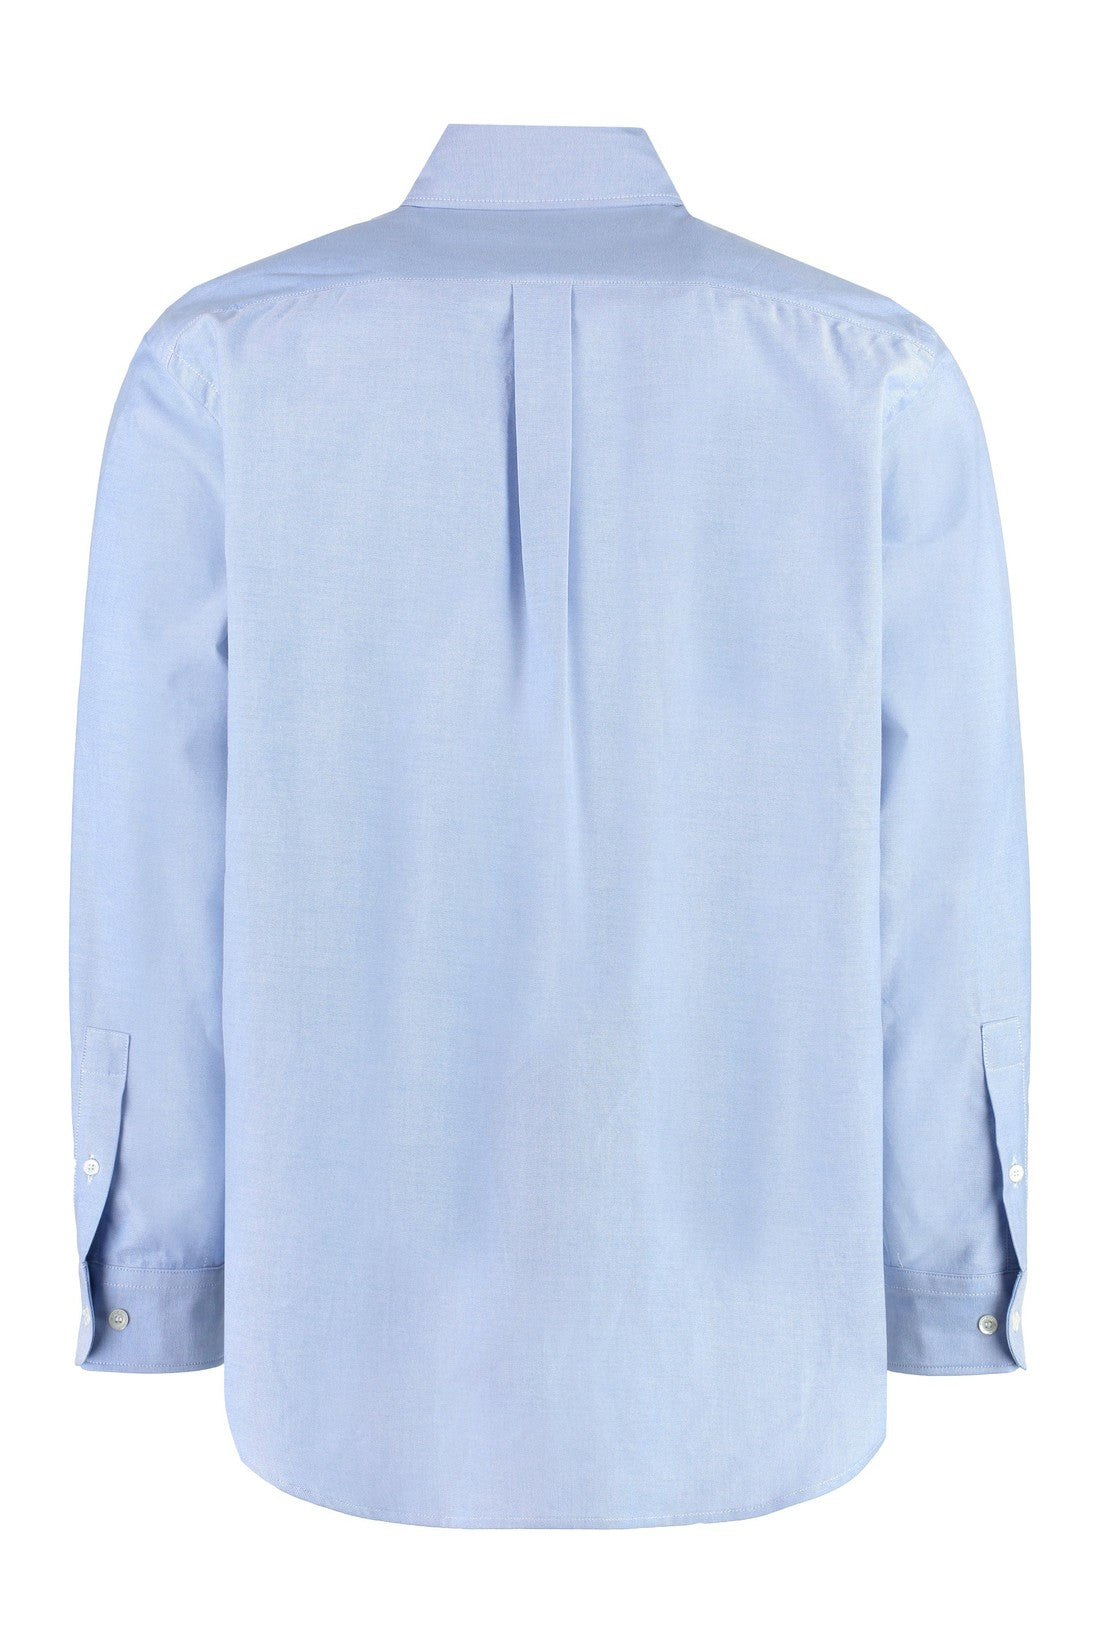 Palm Angels-OUTLET-SALE-Button-down collar cotton shirt-ARCHIVIST